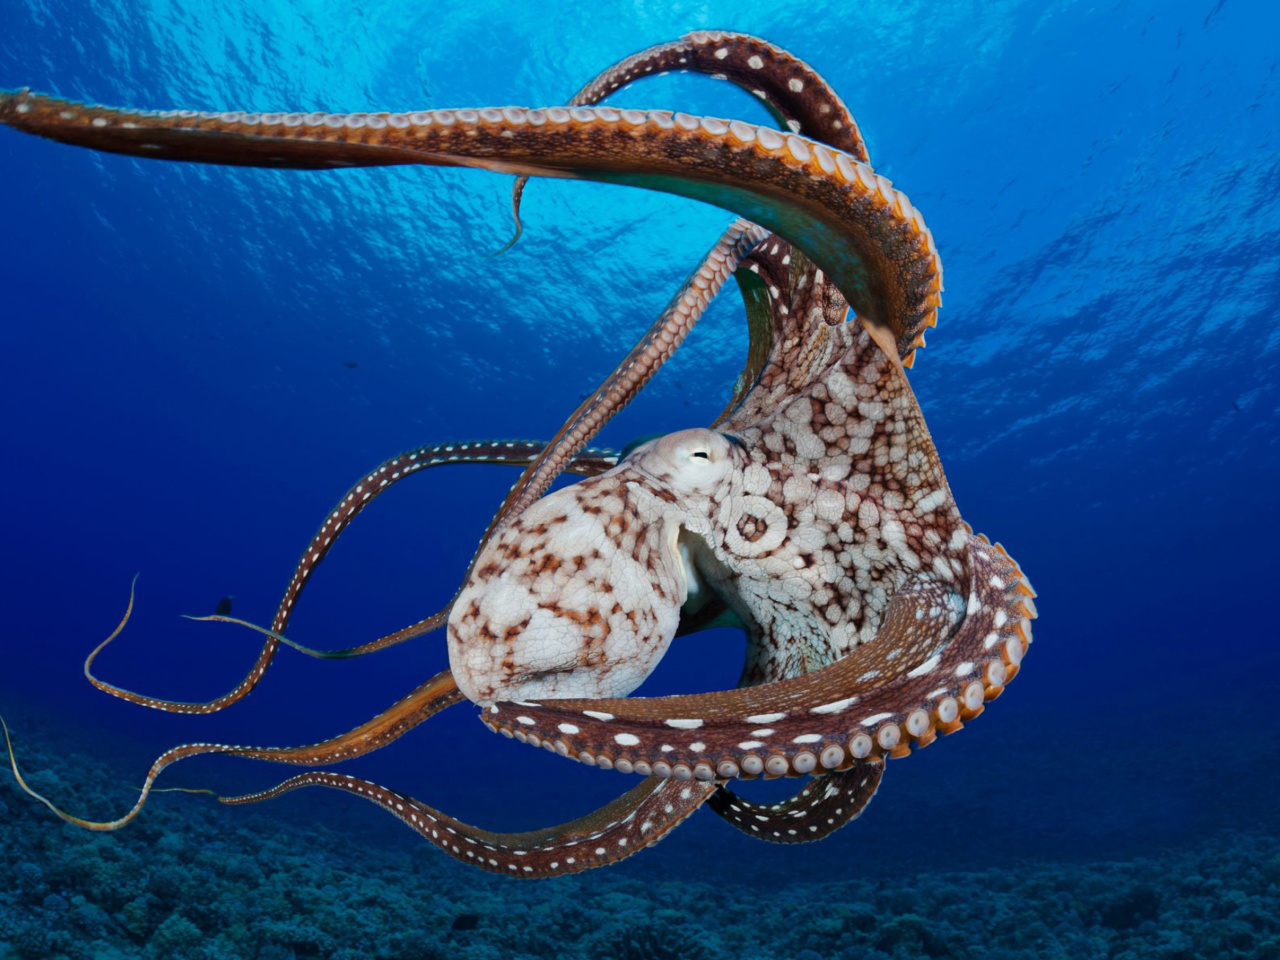 Octopus in the Atlantic Ocean wallpaper 1280x960